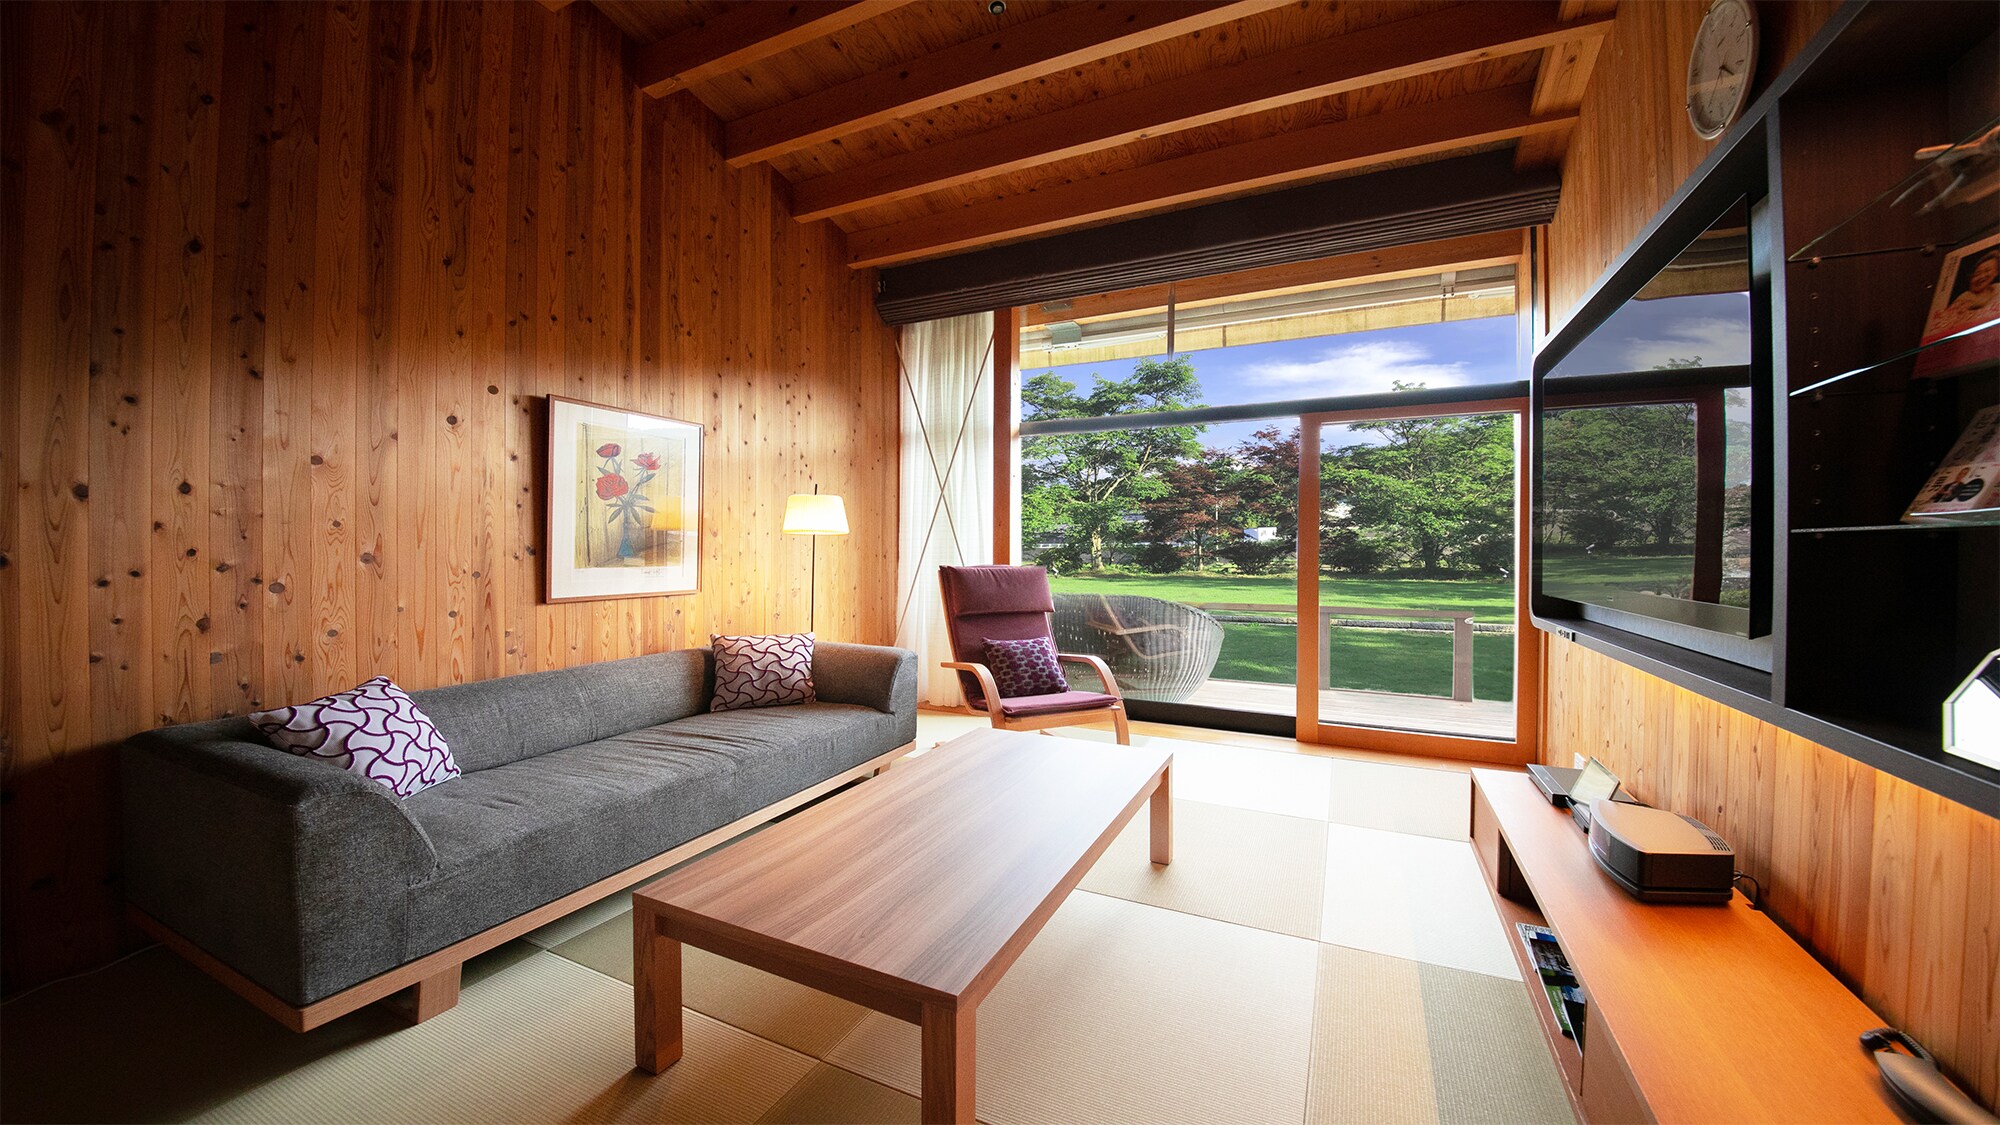 ■ 스위트 룸 - 일본식 거실 ■ 2015 년 굿 디자인상 수상. ”일본과 서양 융합의 공간 디자인”